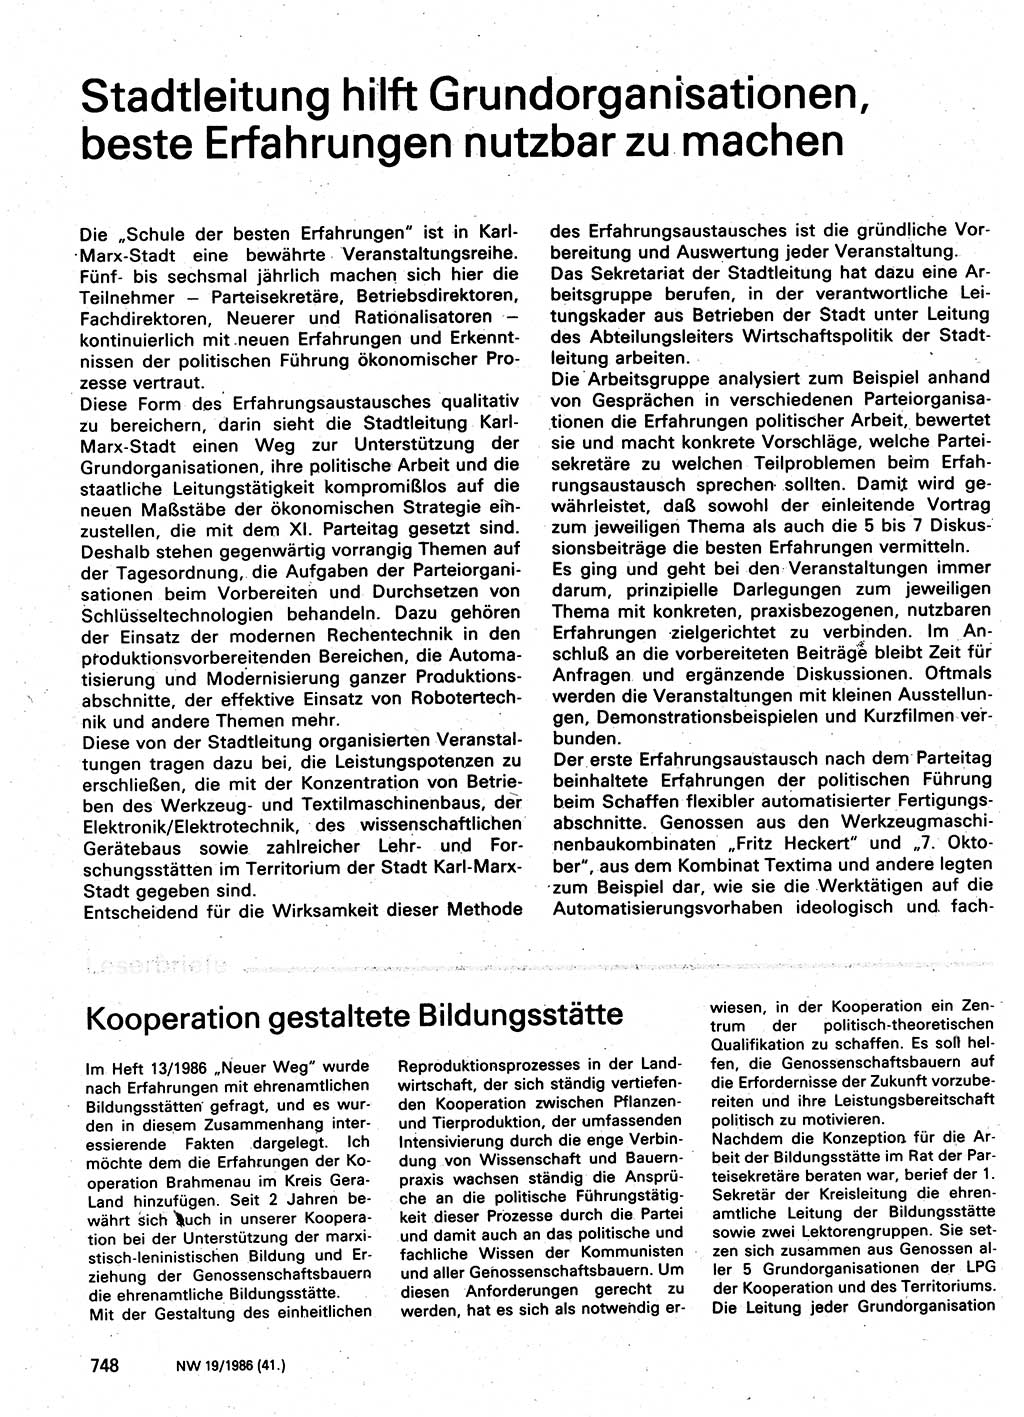 Neuer Weg (NW), Organ des Zentralkomitees (ZK) der SED (Sozialistische Einheitspartei Deutschlands) für Fragen des Parteilebens, 41. Jahrgang [Deutsche Demokratische Republik (DDR)] 1986, Seite 748 (NW ZK SED DDR 1986, S. 748)